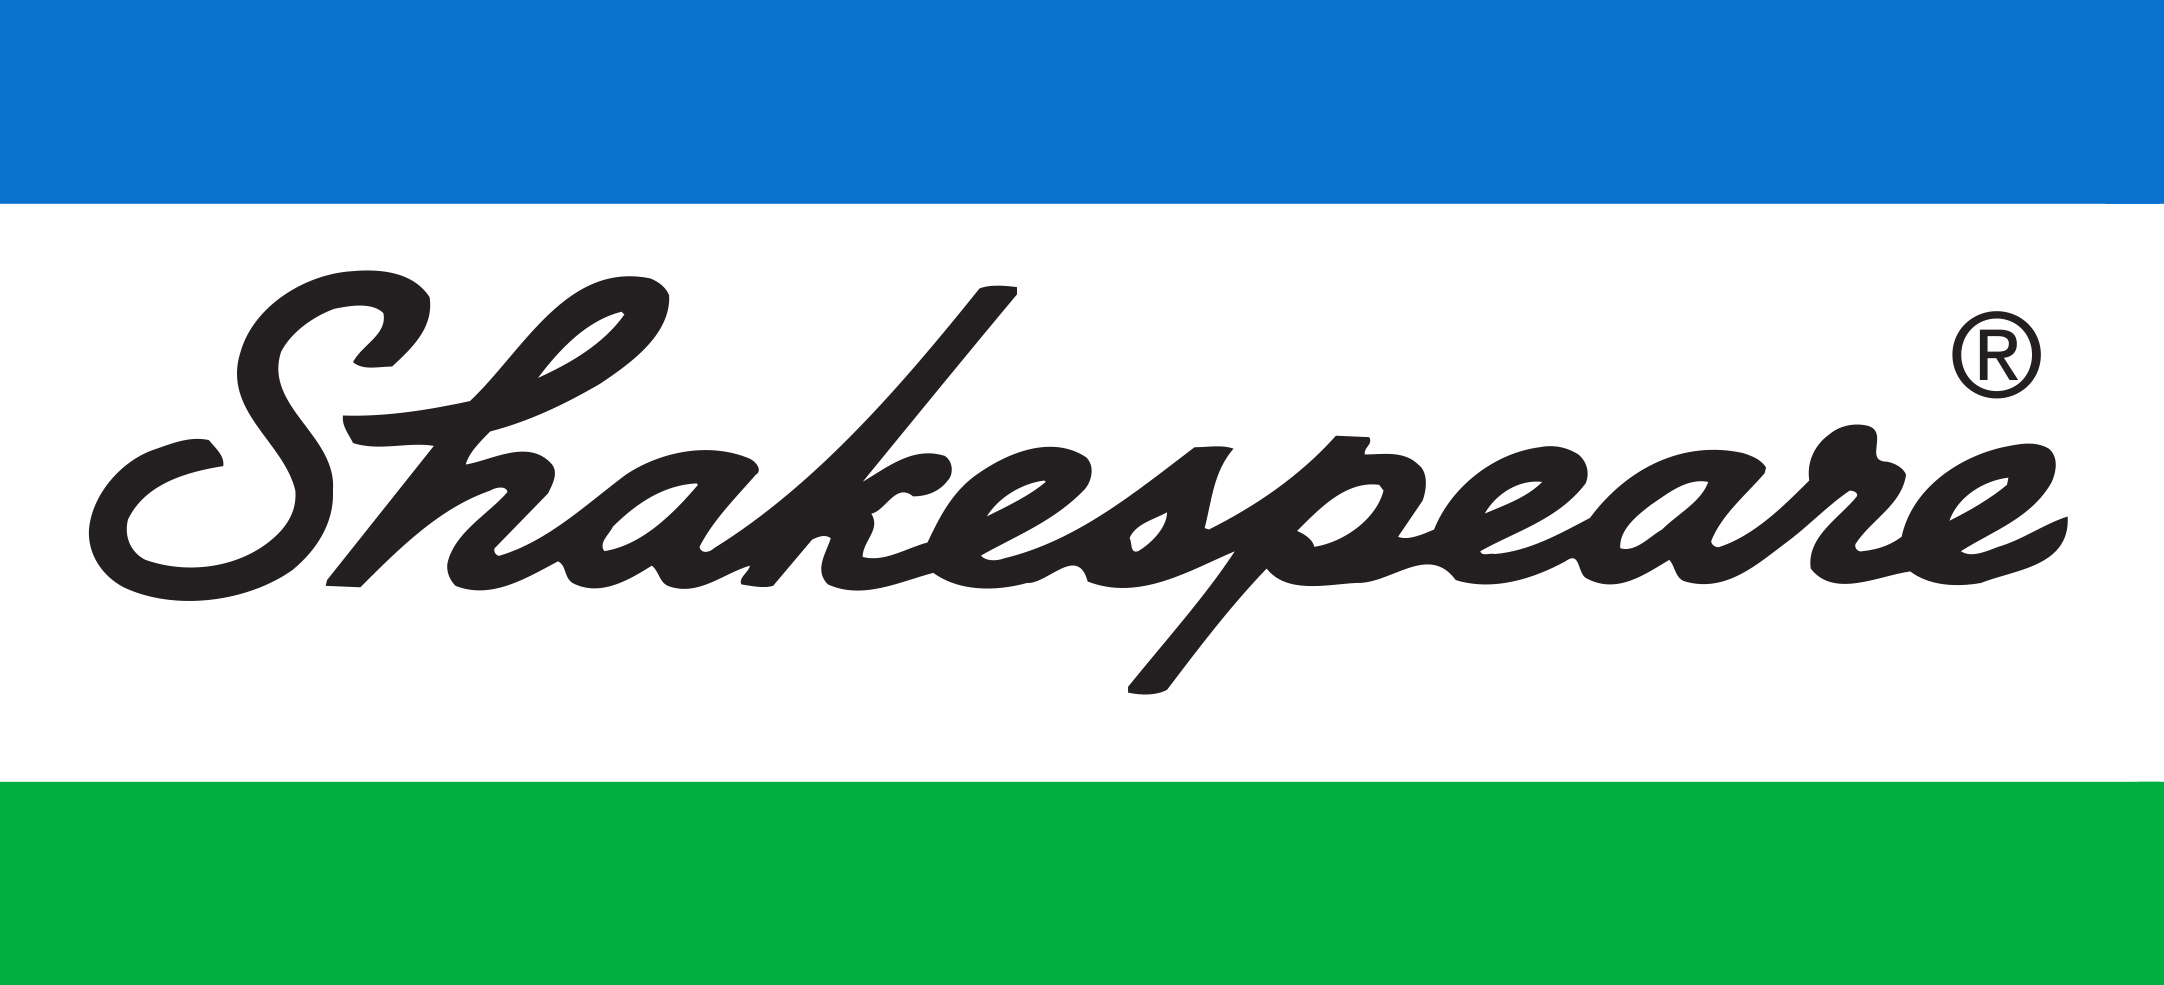 logo shakespeare.jpg